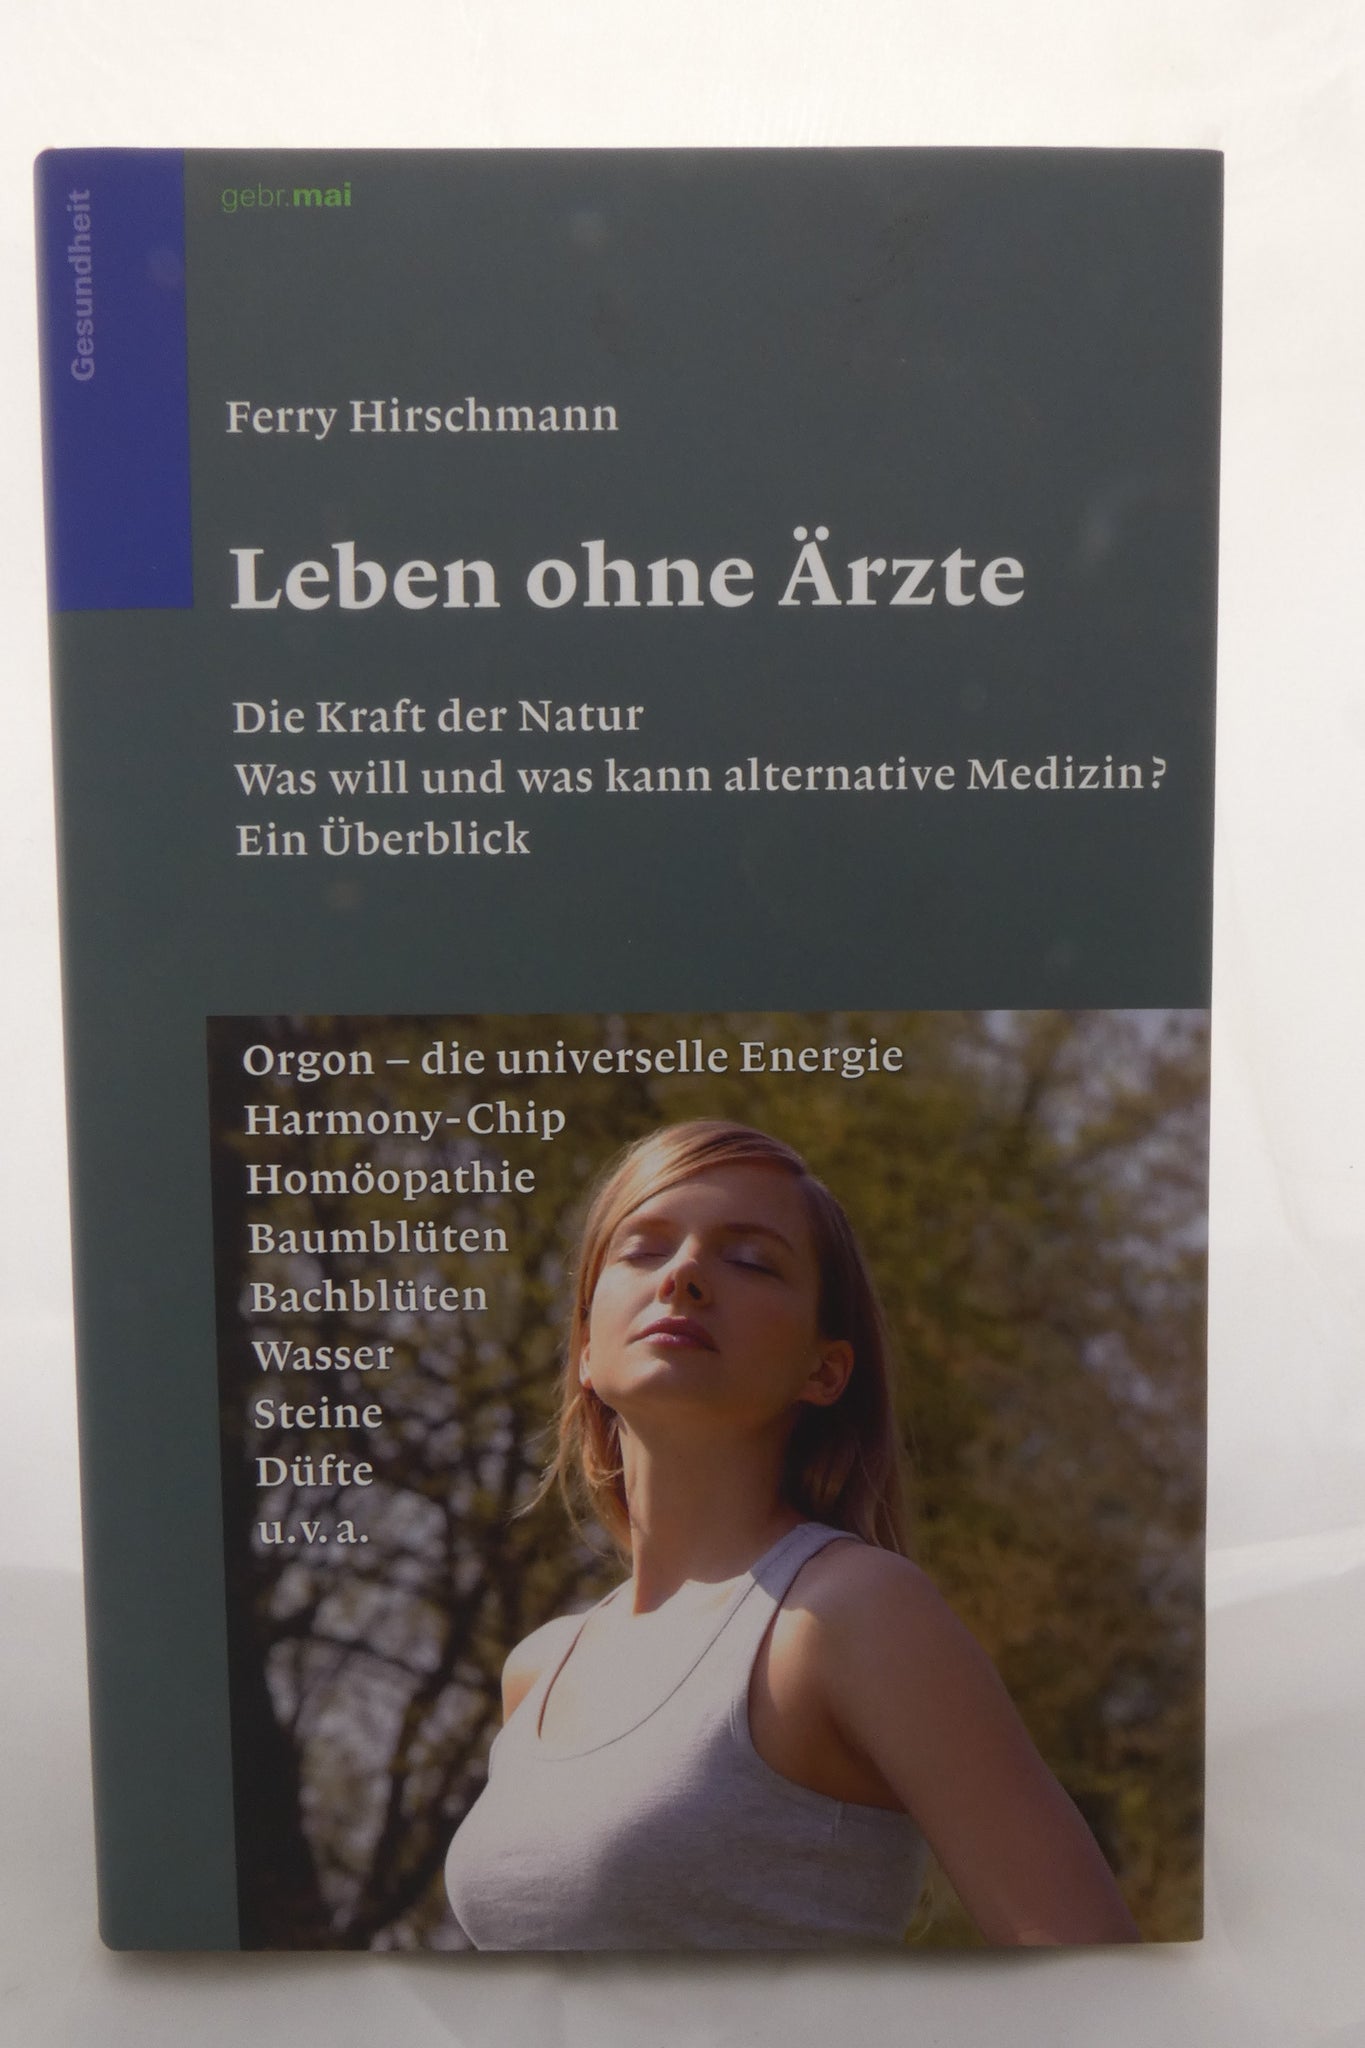 Leben ohne Ärzte von Ferry Hirschmann